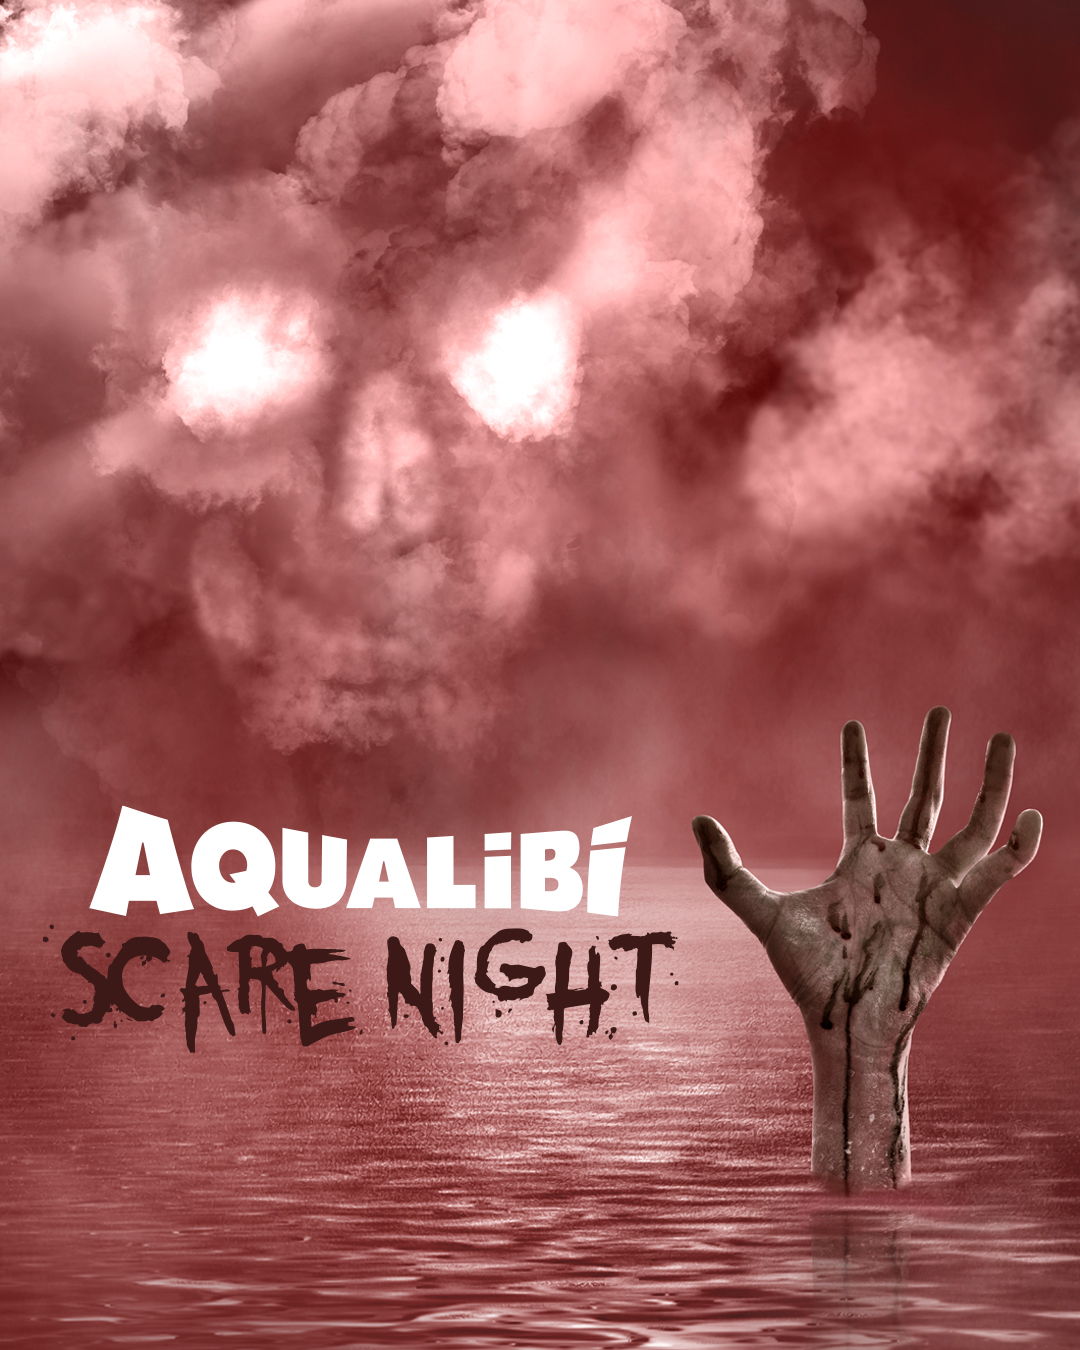 Aqualibi Scare Nights: du 28 au 31 octobre.
Animations halloweenesques en piscine dès 18h